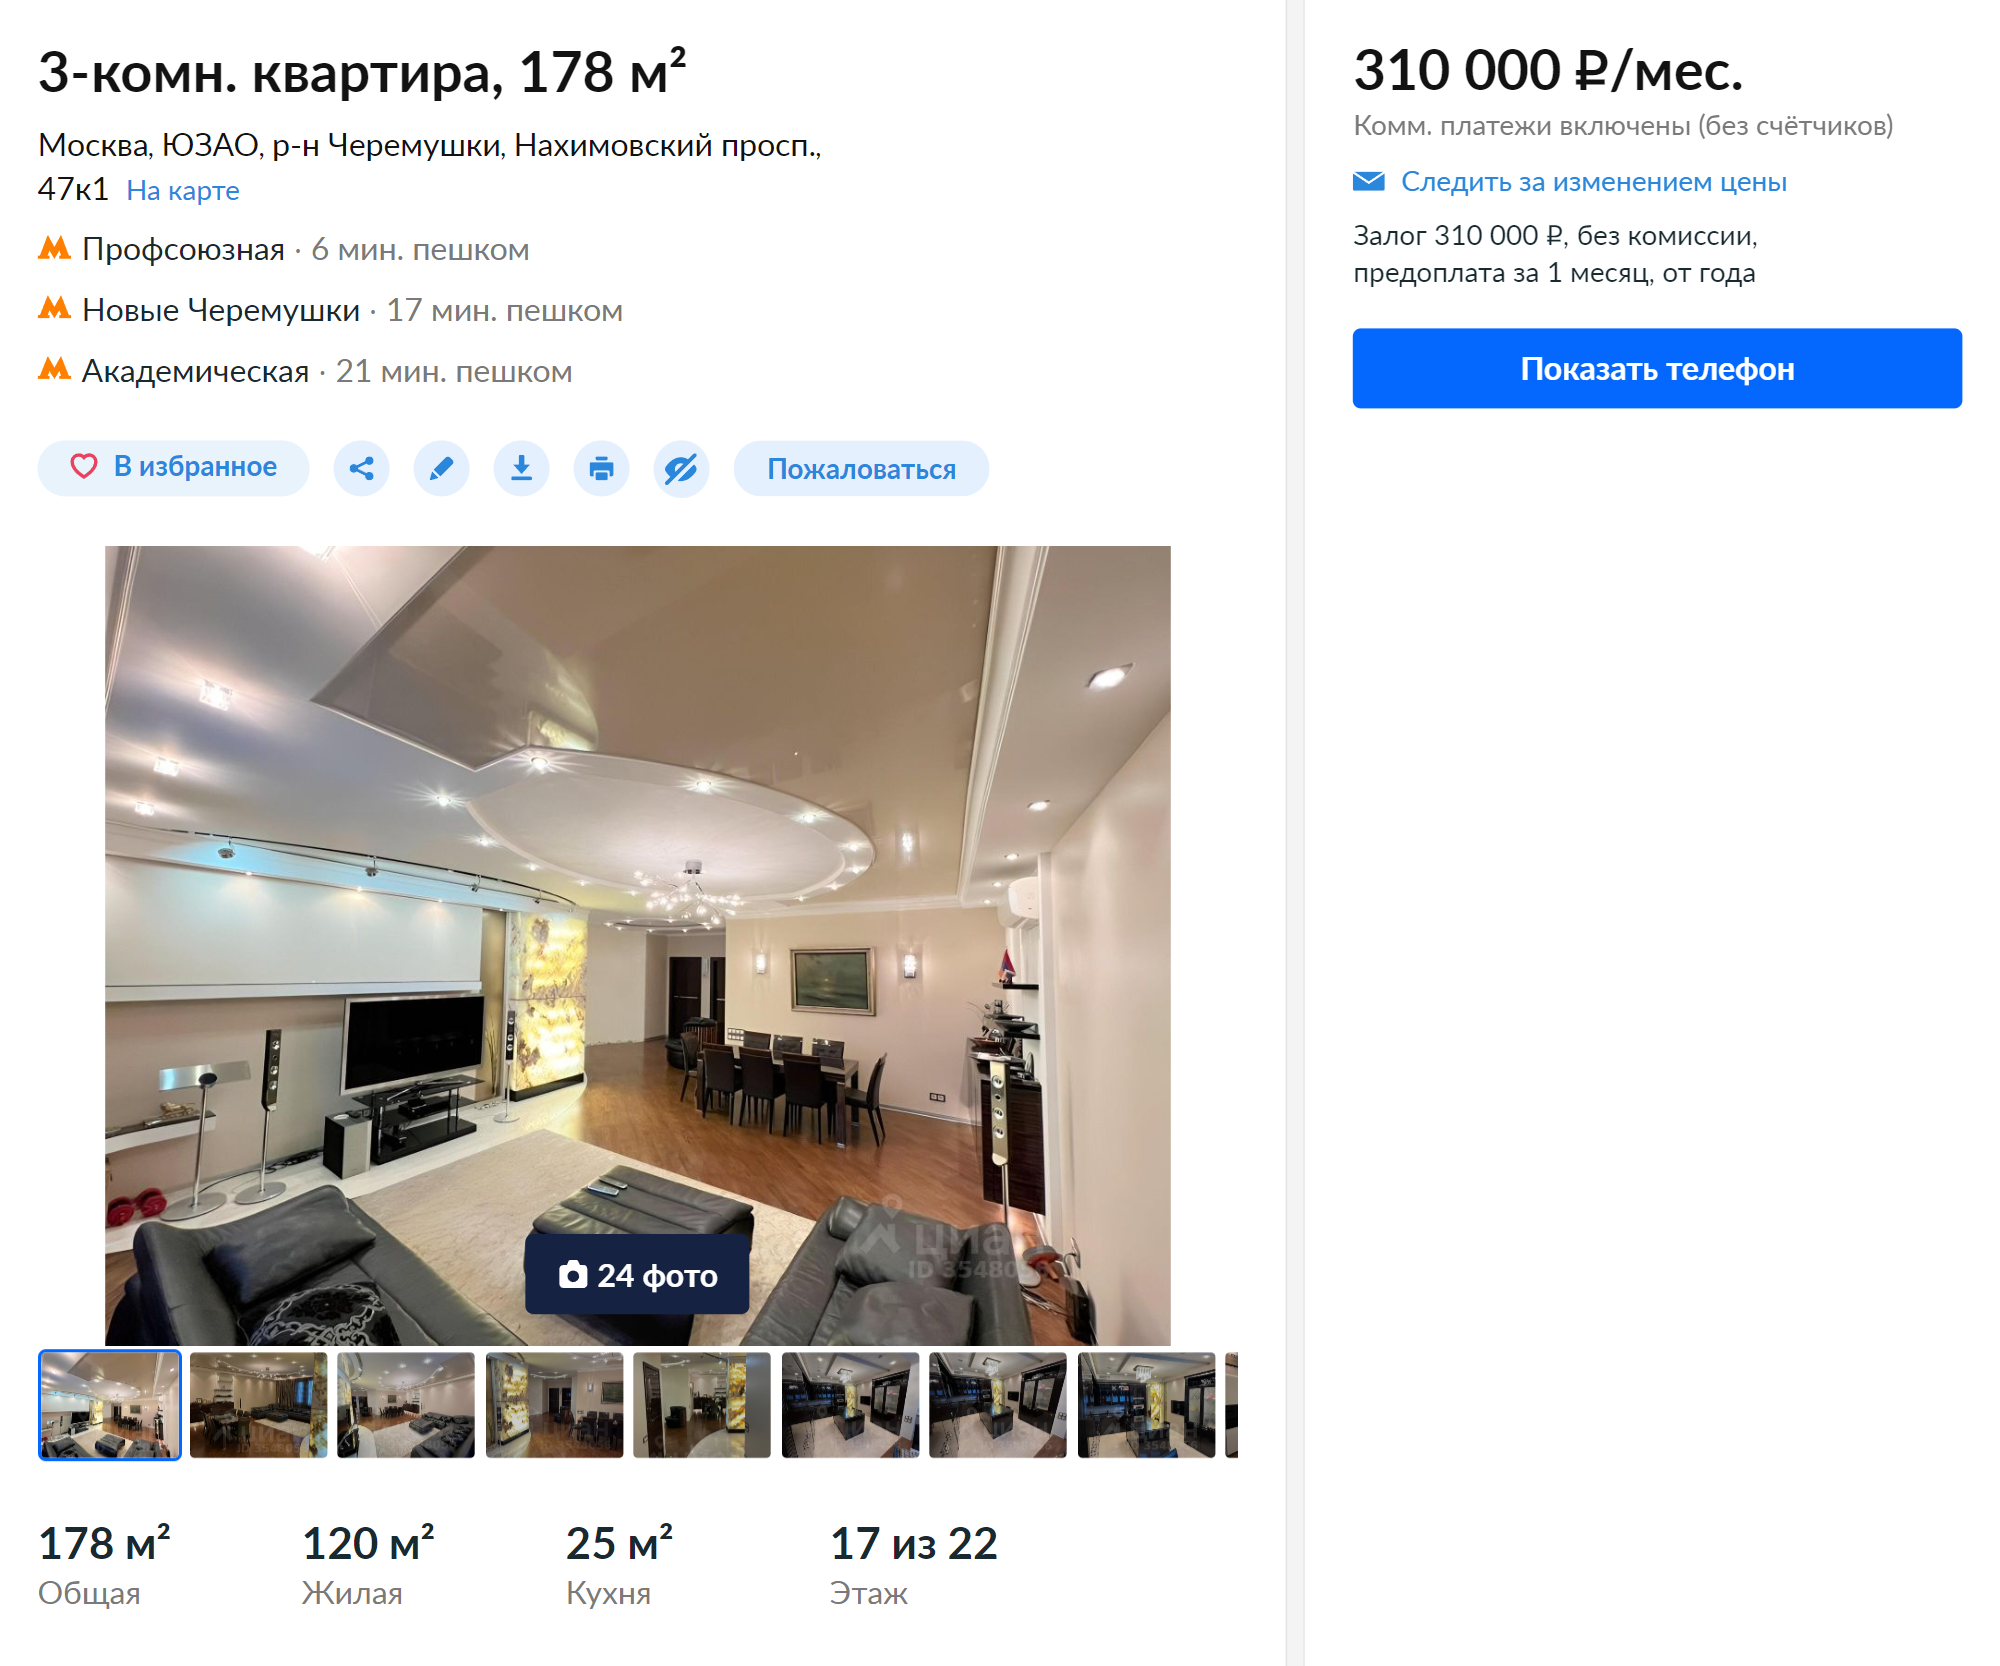 Аренда самой дорогой трехкомнатной квартиры обойдется в 310 тысяч рублей. Это трешка на Нахимовском проспекте. Источник: cian.ru